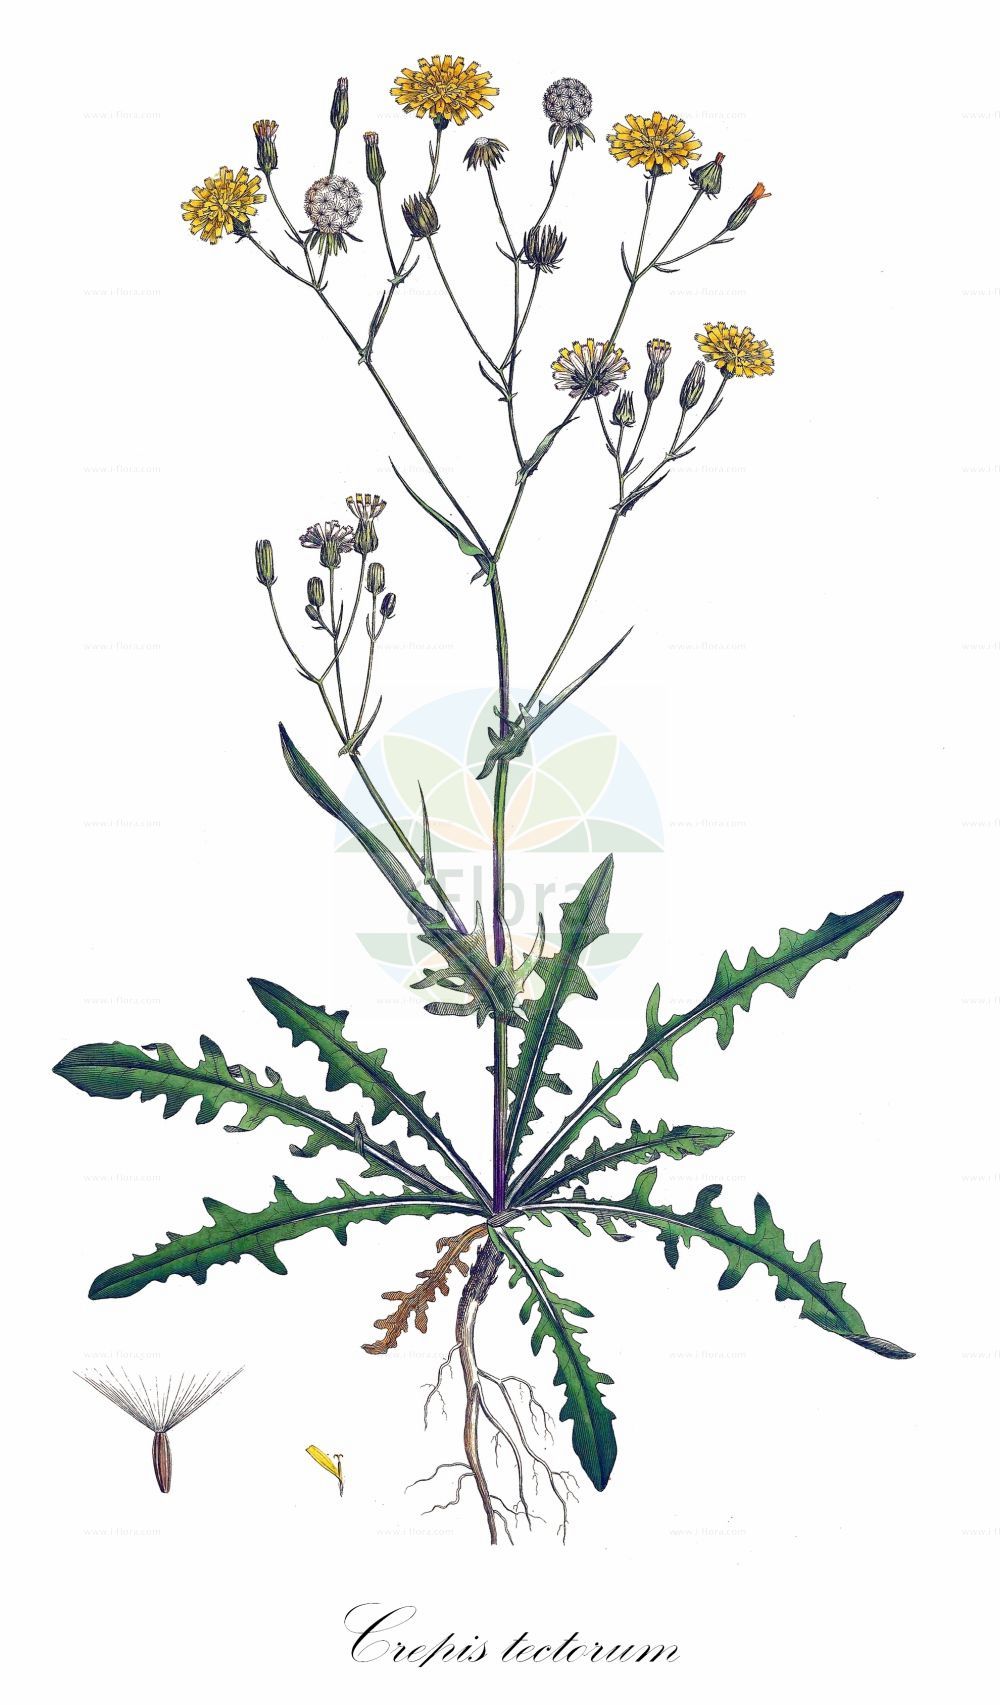 Historische Abbildung von Crepis tectorum (Dach-Pippau - Narrow-leaved Hawk's-Beard). Das Bild zeigt Blatt, Bluete, Frucht und Same. ---- Historical Drawing of Crepis tectorum (Dach-Pippau - Narrow-leaved Hawk's-Beard). The image is showing leaf, flower, fruit and seed.(Crepis tectorum,Dach-Pippau,Narrow-leaved Hawk's-Beard,Crepis tectorum,Dach-Pippau,Mauer-Pippau,Narrow-leaved Hawk's-Beard,Narrow-leaf Hawksbeard,Succory Hawksbeard,Wall Hawksbeard,Crepis,Pippau,Hawk's-beard,Asteraceae,Korbblütengewächse,Daisy family,Blatt,Bluete,Frucht,Same,leaf,flower,fruit,seed,Curtis (1777-1798))